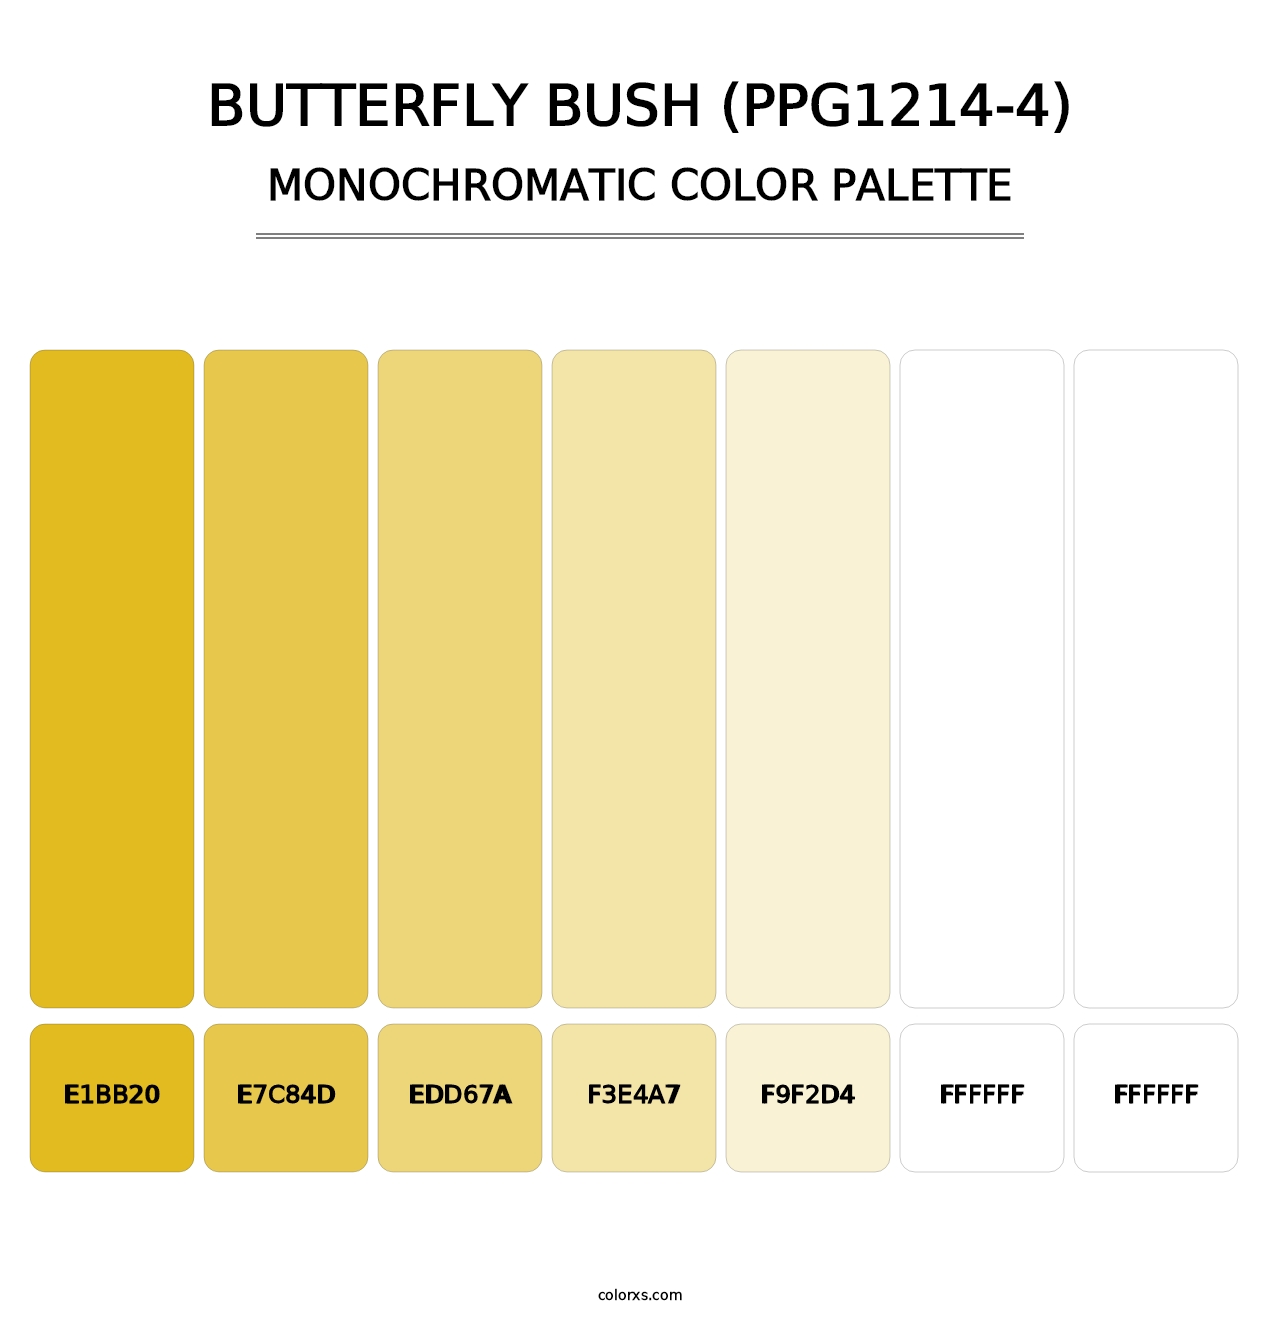 Butterfly Bush (PPG1214-4) - Monochromatic Color Palette